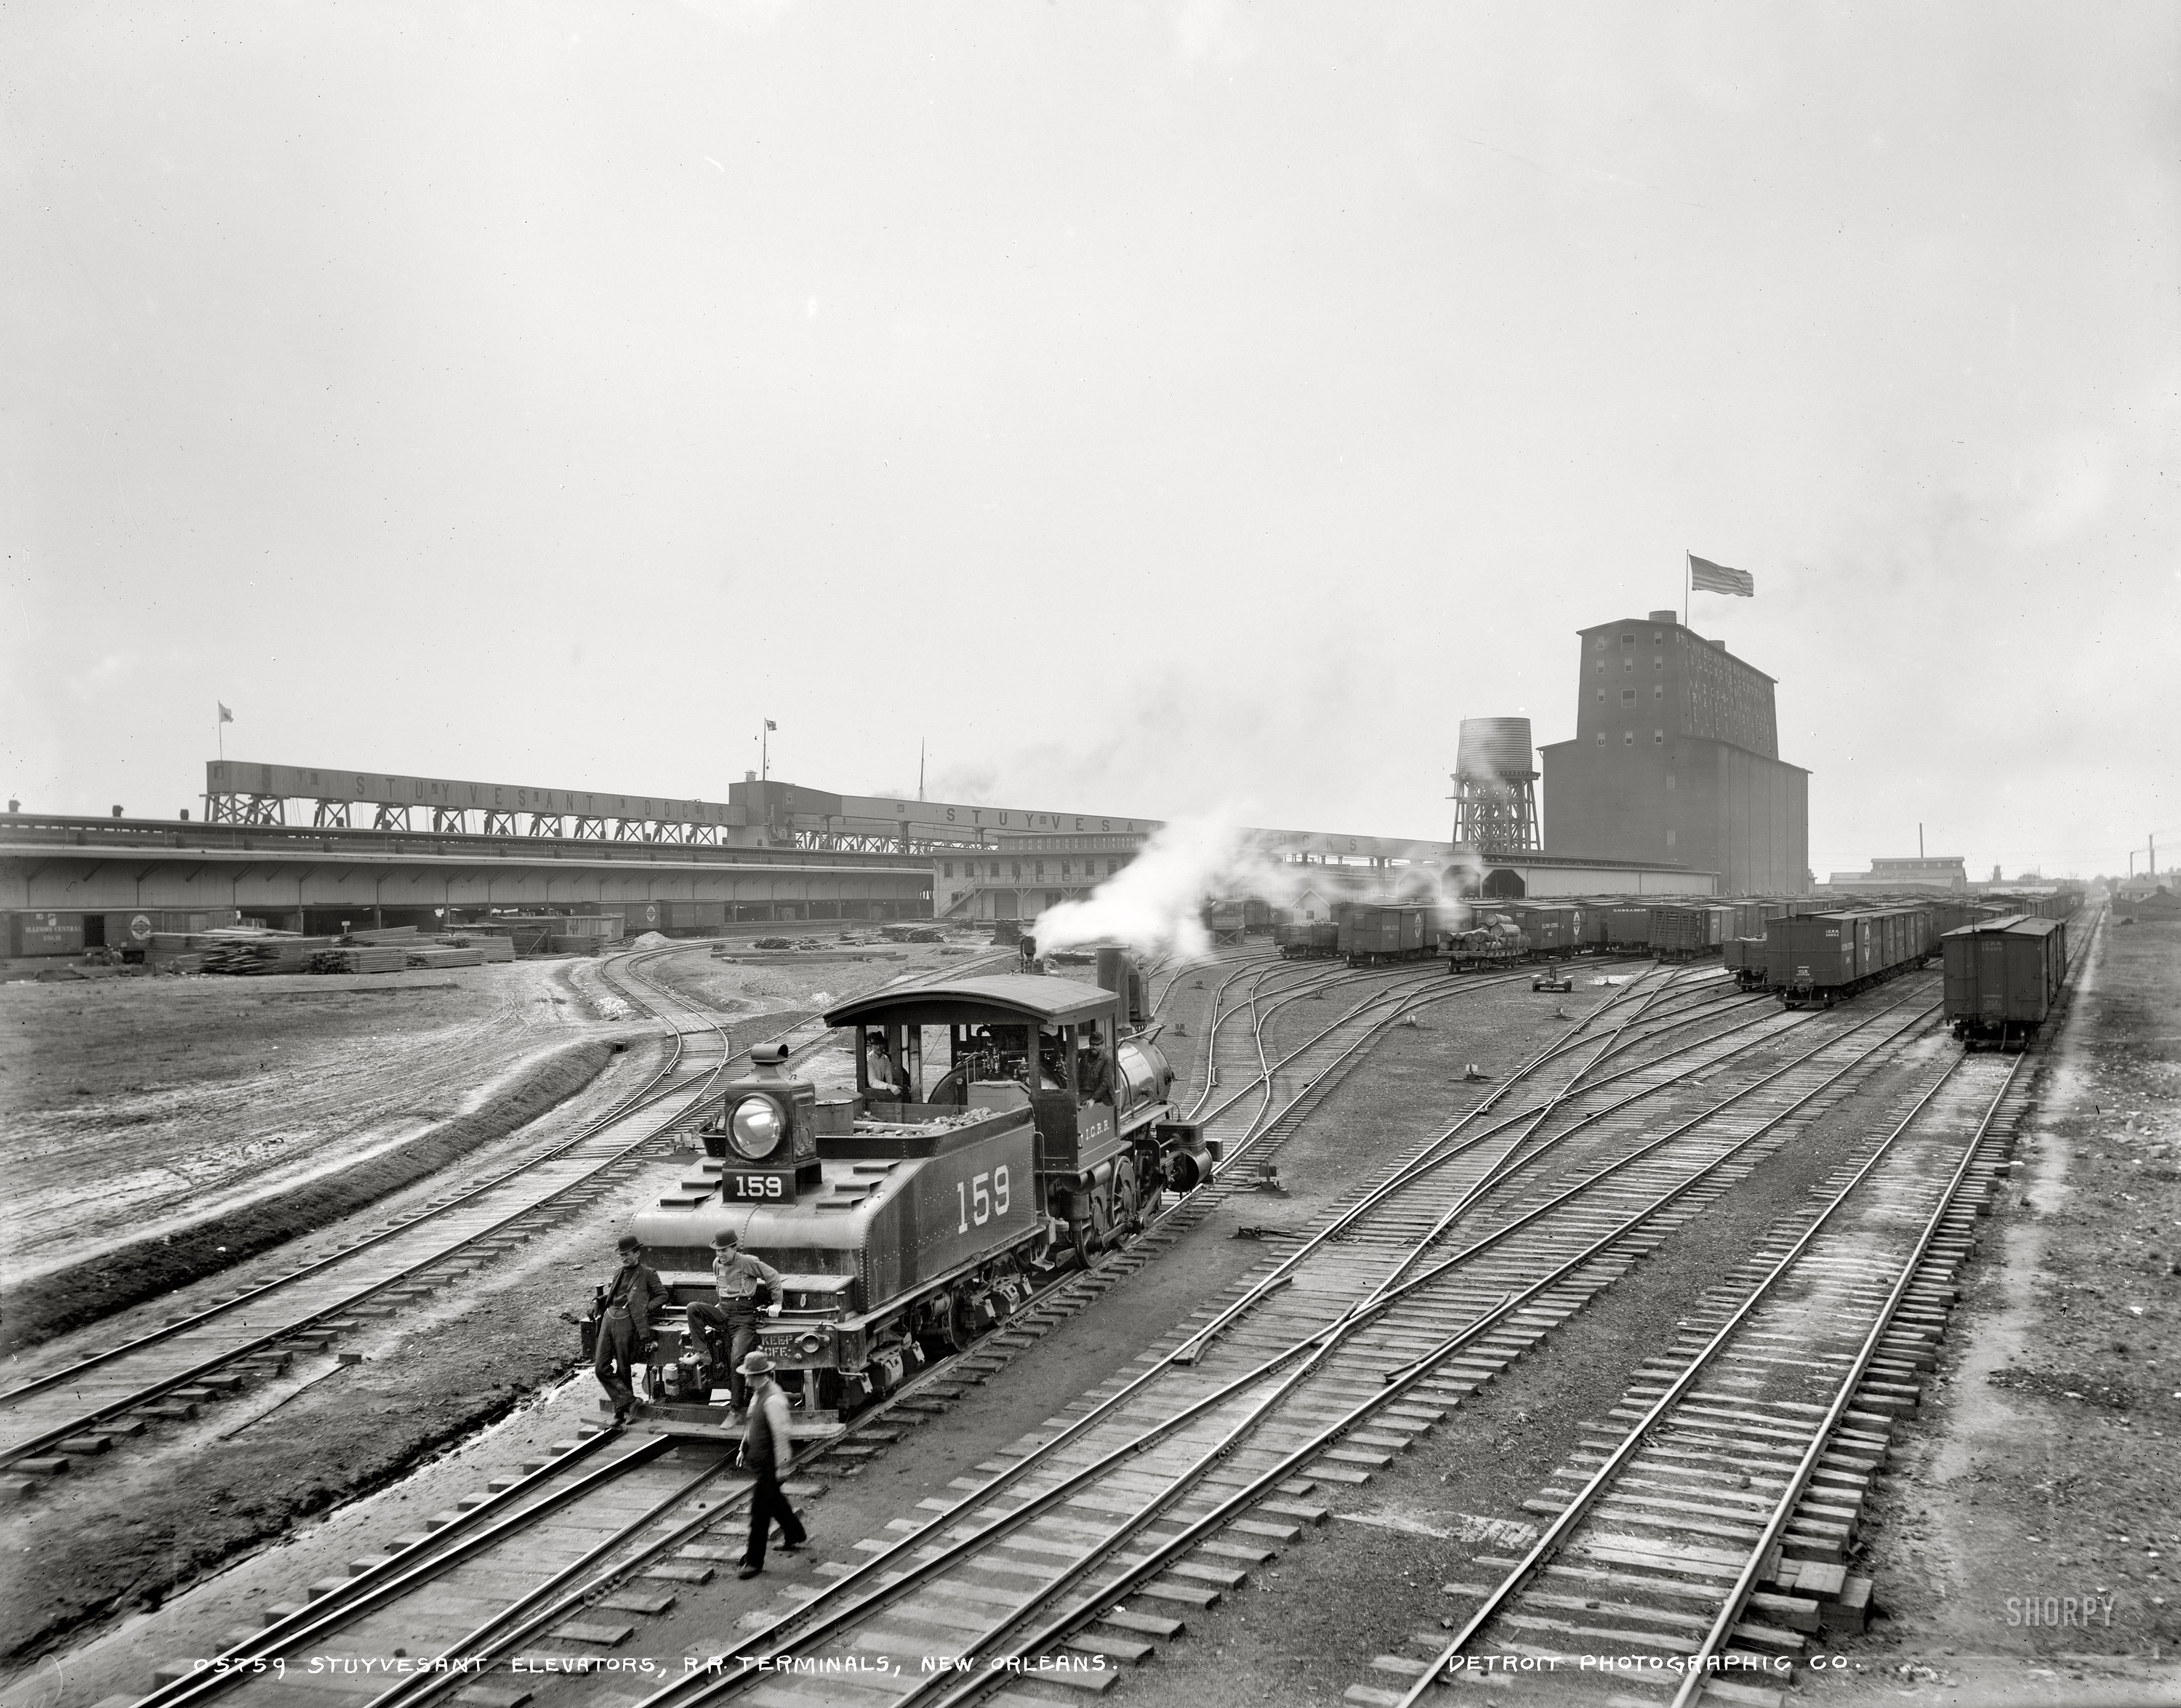 Железные дороги начала 20 века. Железные дороги США 1900. Железные дороги в США В начале 20 века. Железная дорога США 19 век. Железные дороги 19 века США.